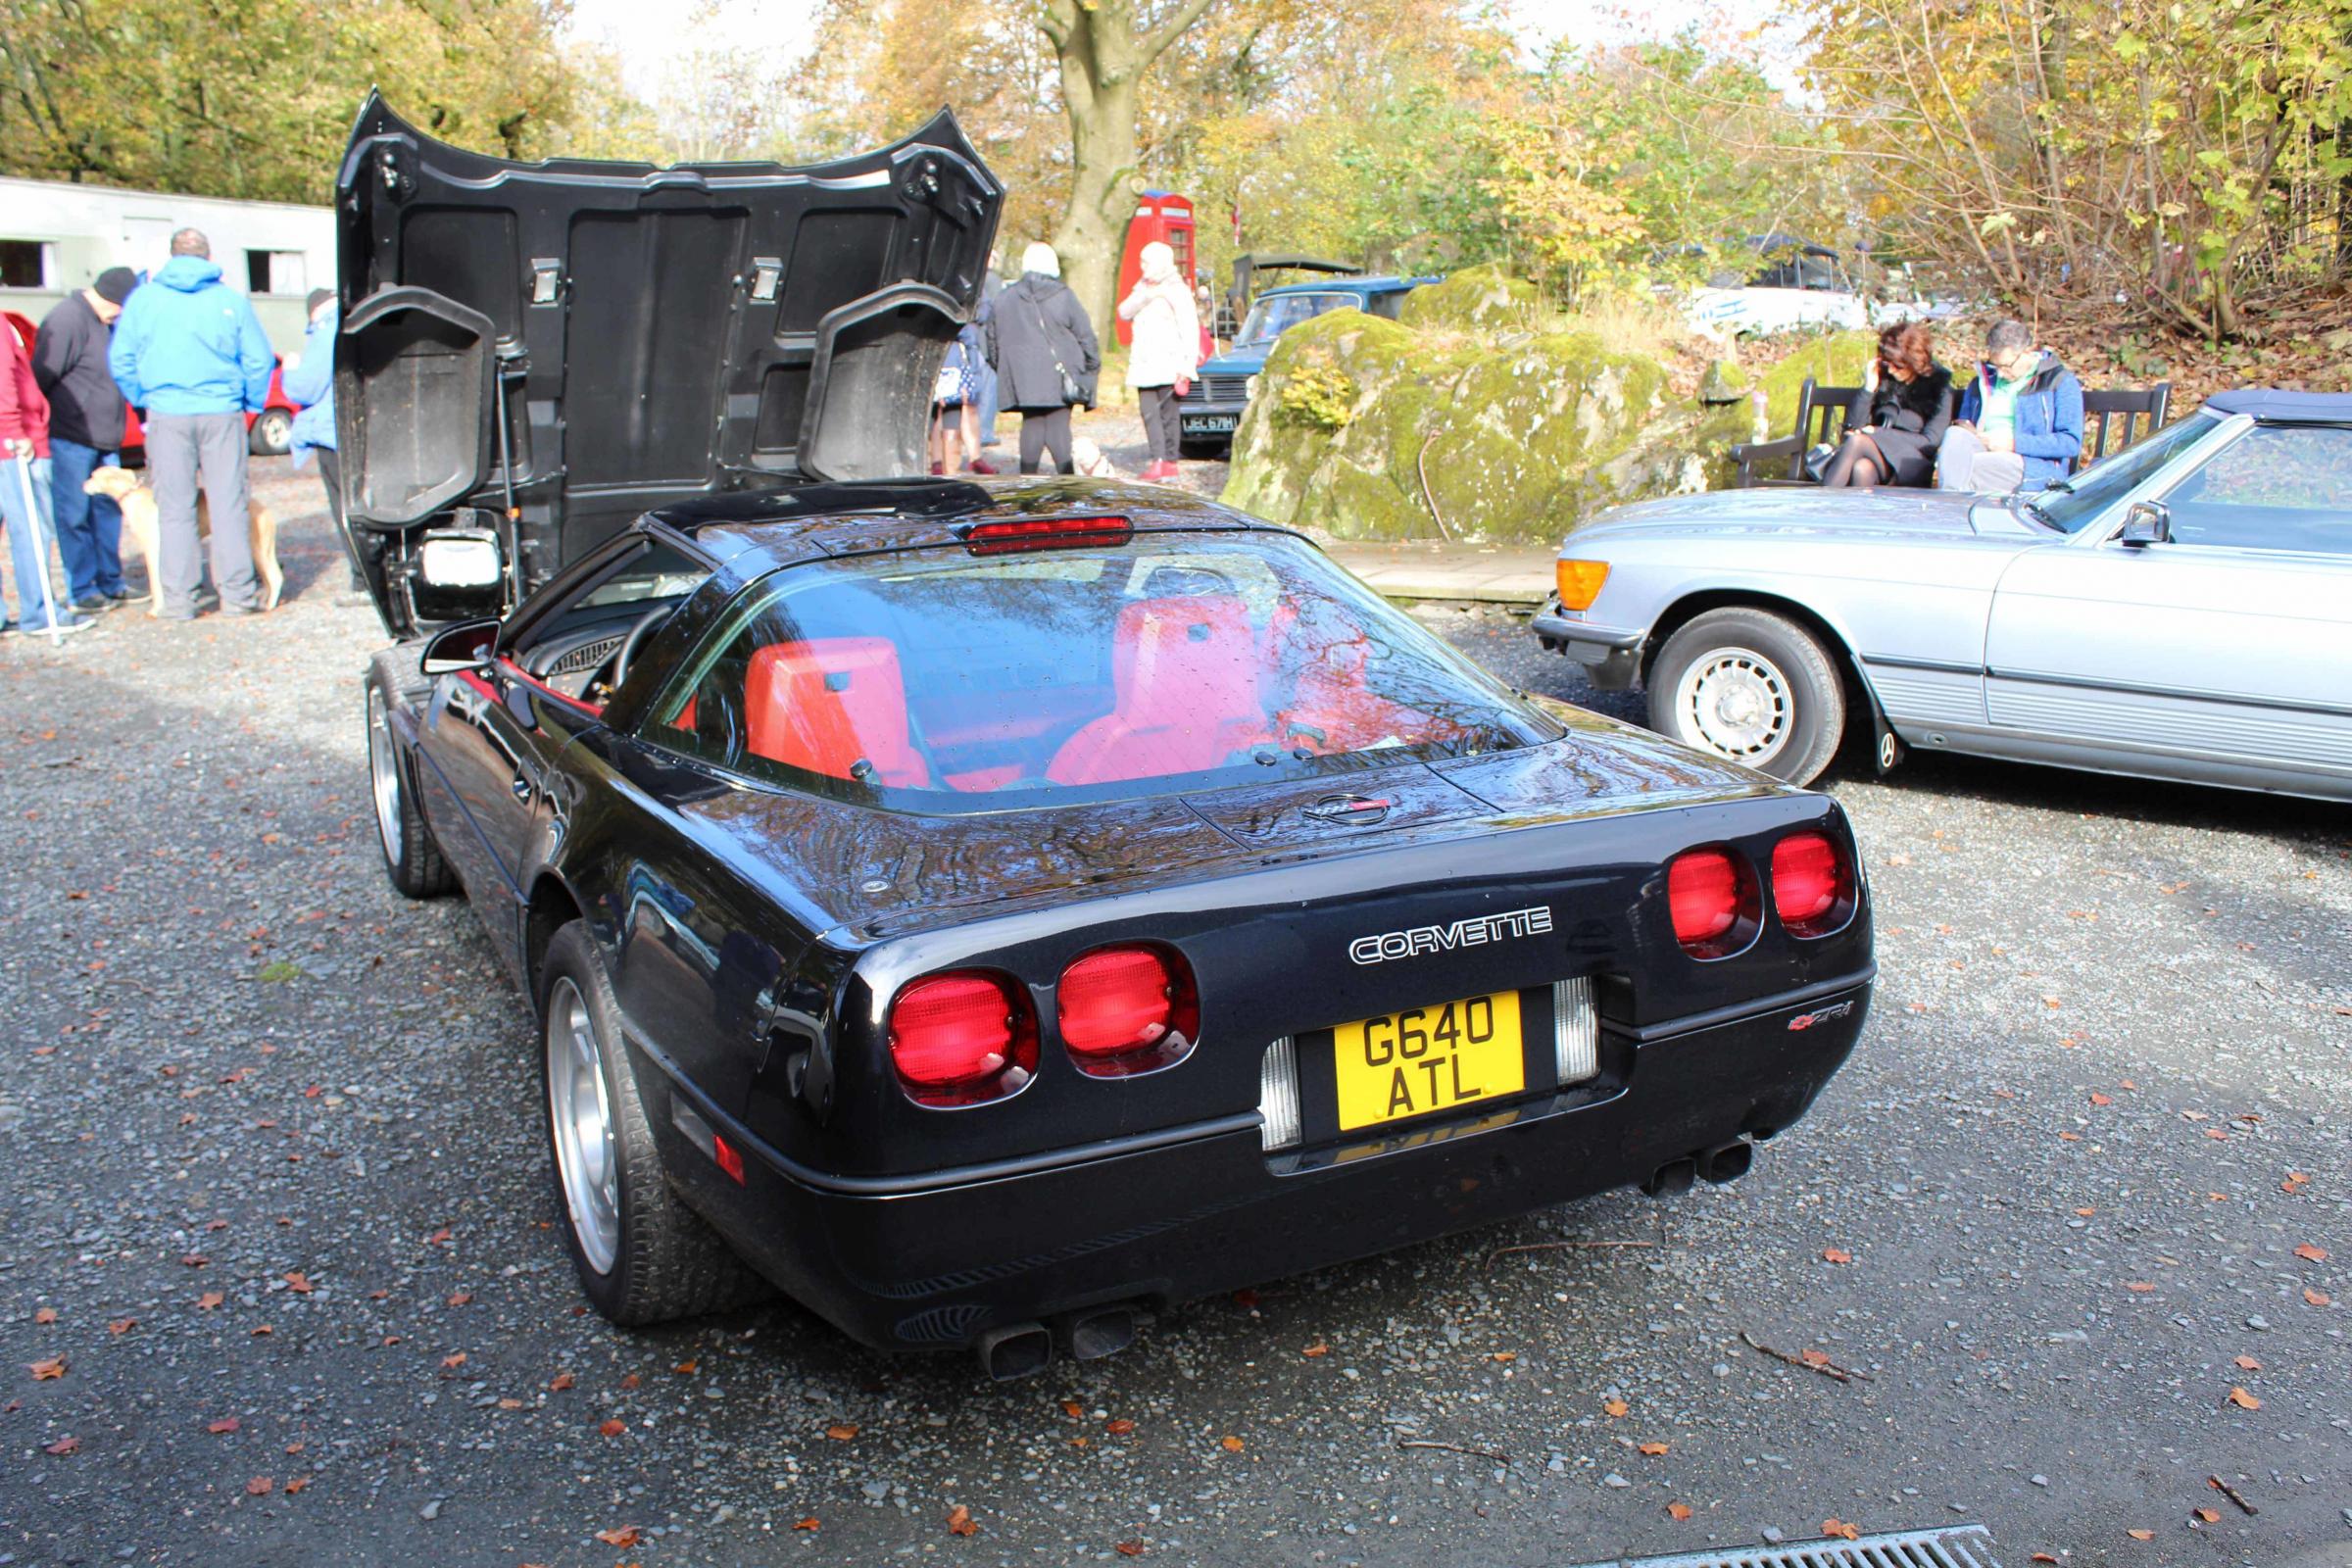 MUSEUM: Corvette at the Lakeland Motor Museum